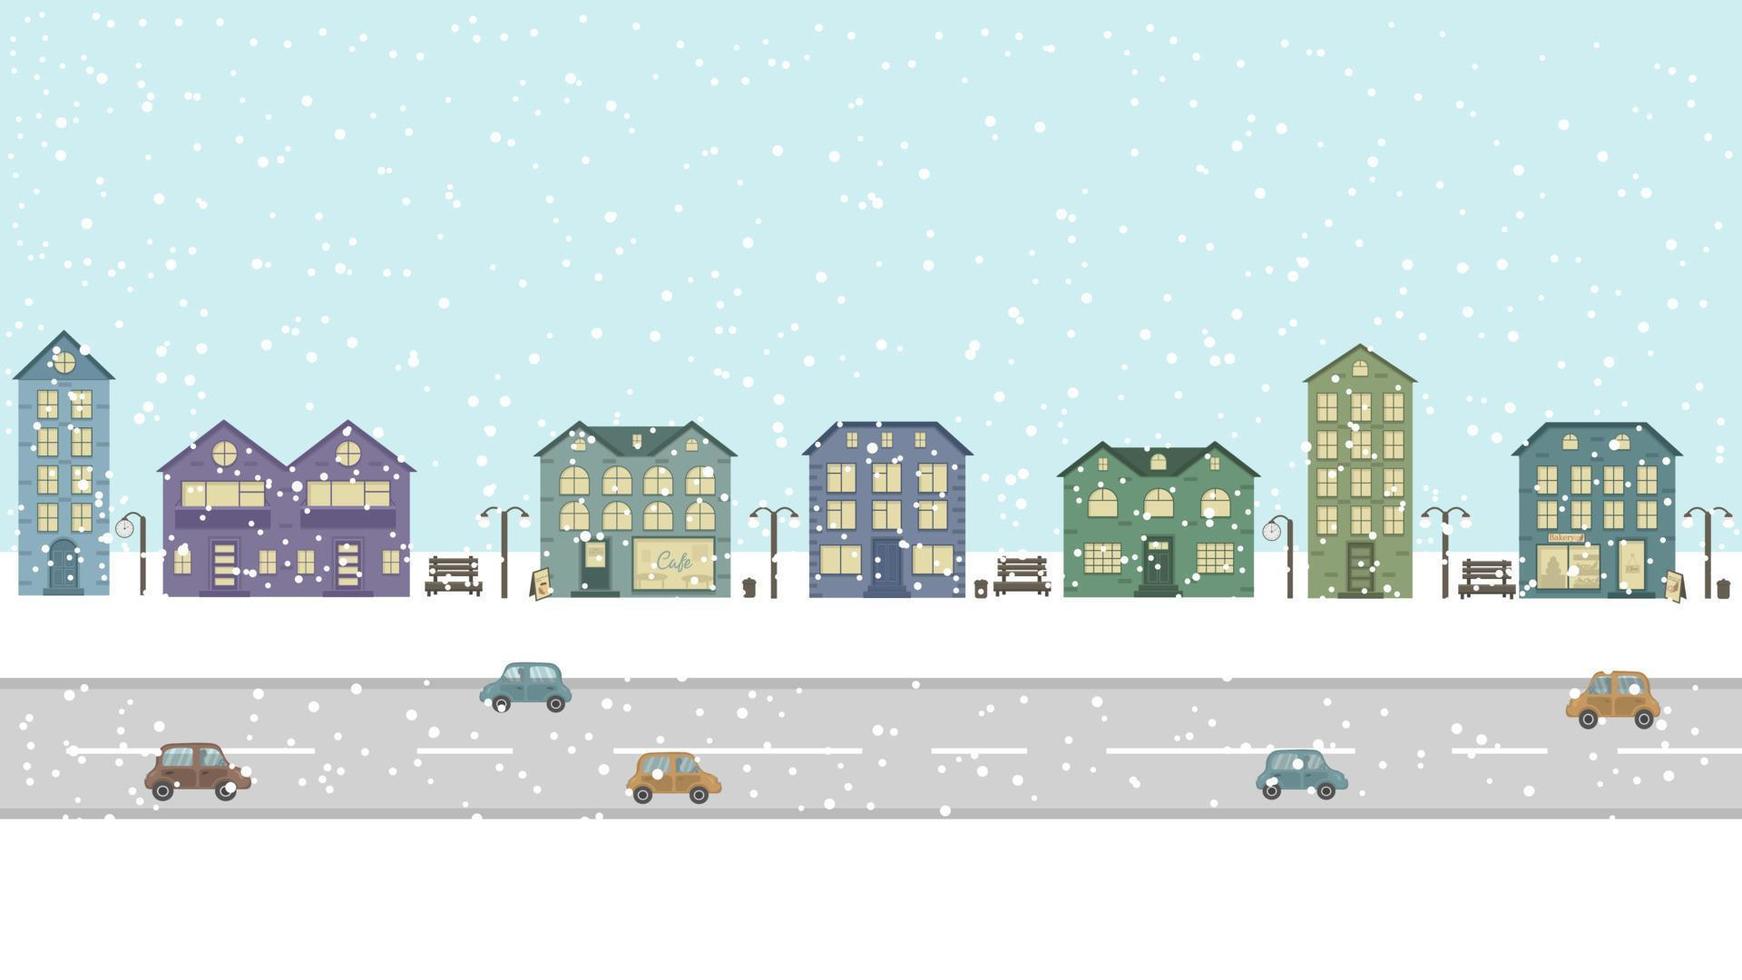 vista panorámica de la calle con casas y la carretera con coches. ciudad nevada de invierno. ilustración con edificios y detalles urbanos. las casas de la gente y una cafetería y una panadería entre ellos. vector